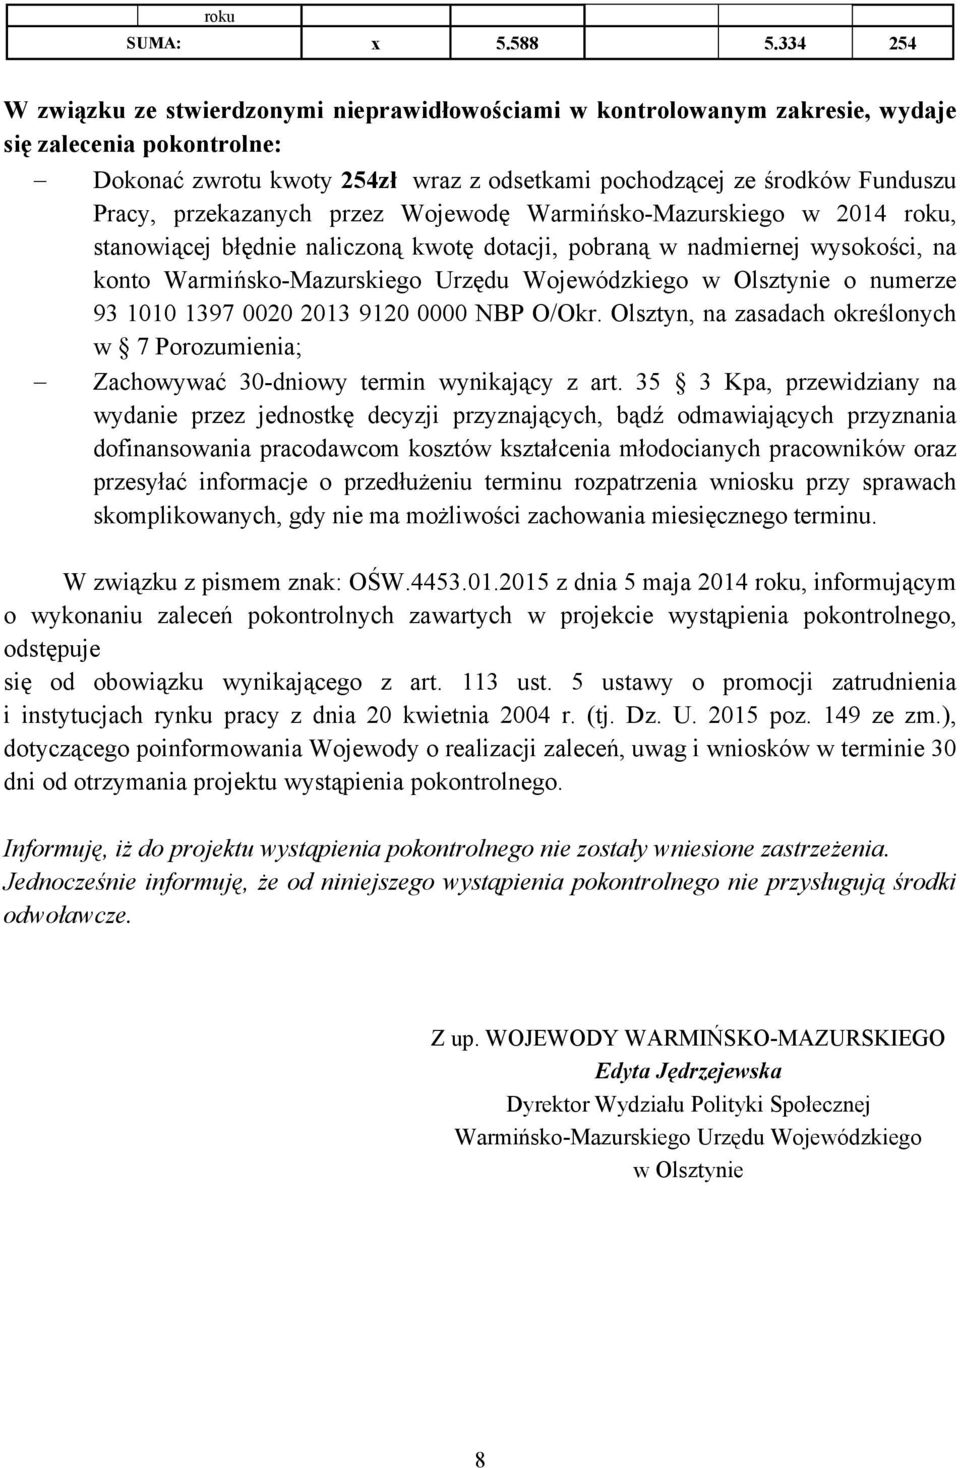 przekazanych przez Wojewodę Warmińsko-Mazurskiego w 2014 roku, stanowiącej błędnie naliczoną kwotę dotacji, pobraną w nadmiernej wysokości, na konto Warmińsko-Mazurskiego Urzędu Wojewódzkiego w